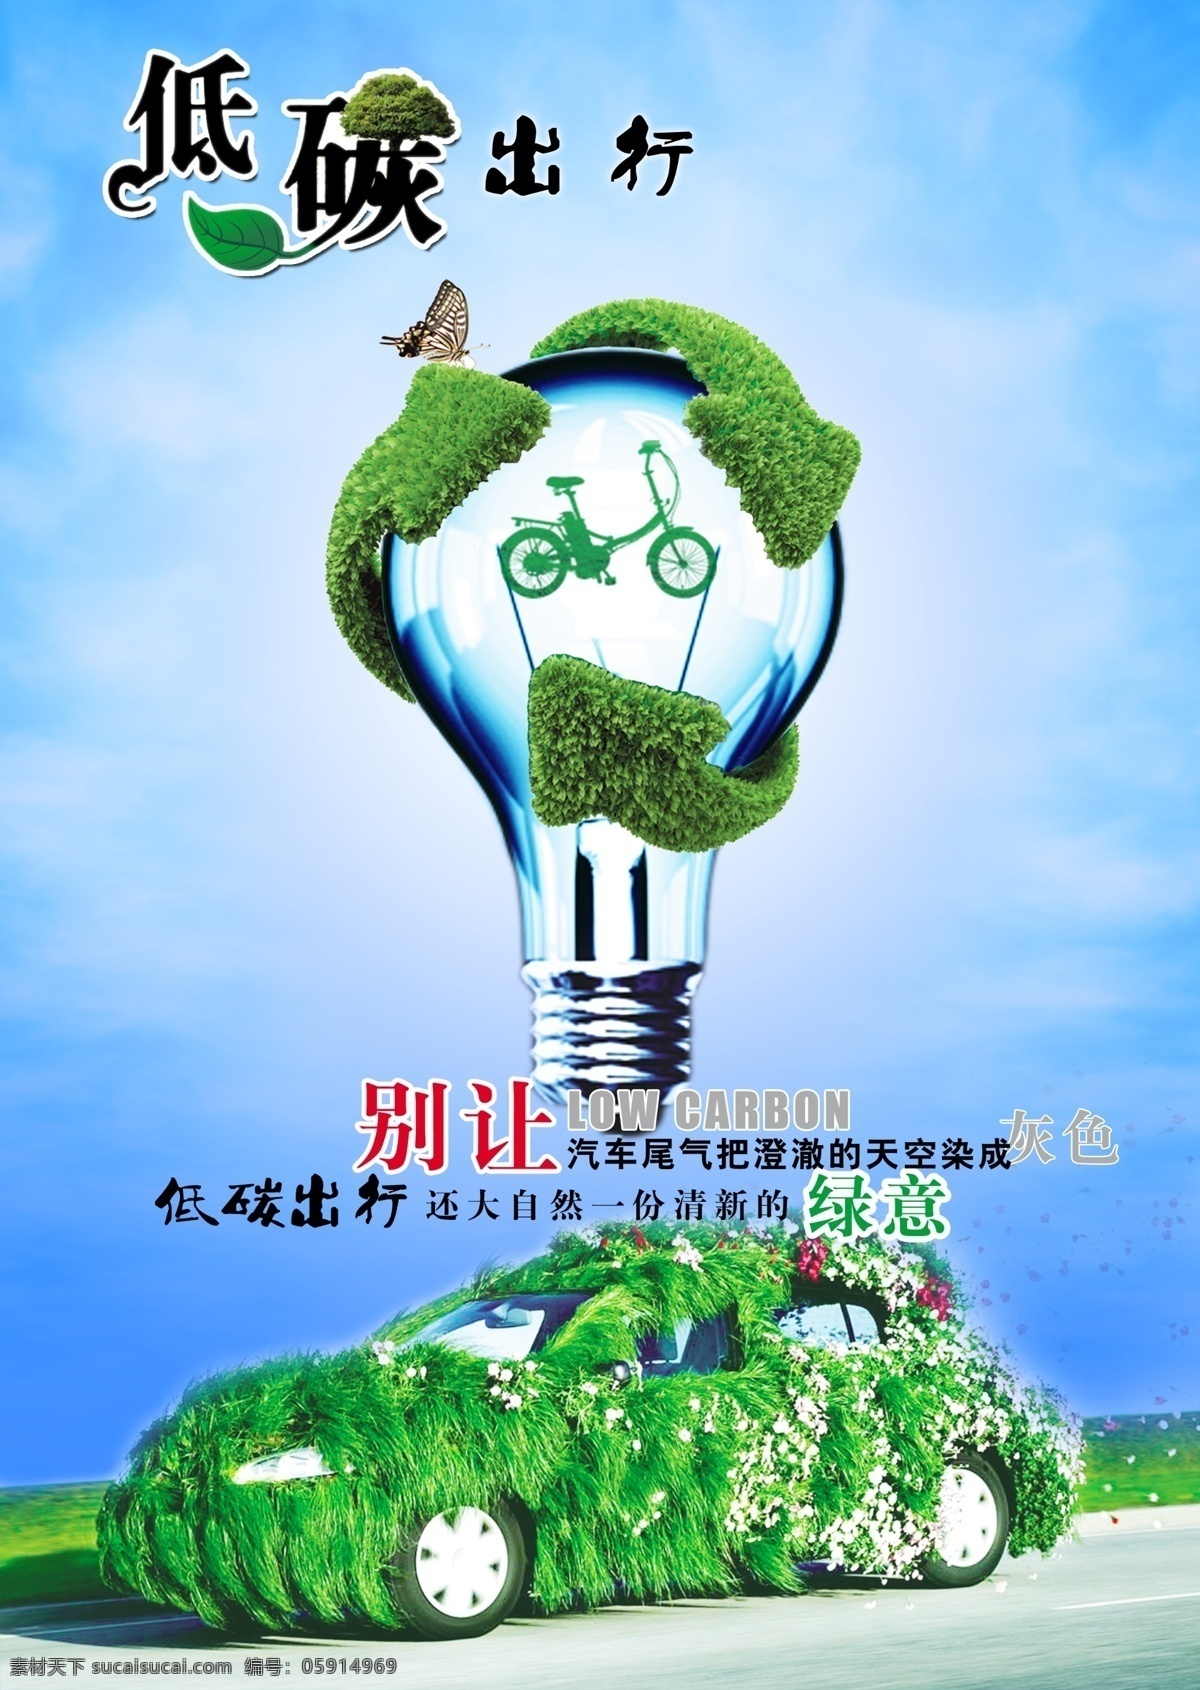 低 碳 环保 生活 出行 海报 低碳出行海报 低碳出行 灯泡 蓝色天空 环保生活 汽车 草 自行车 广告设计模板 源文件 psd素材 分层素材 红色